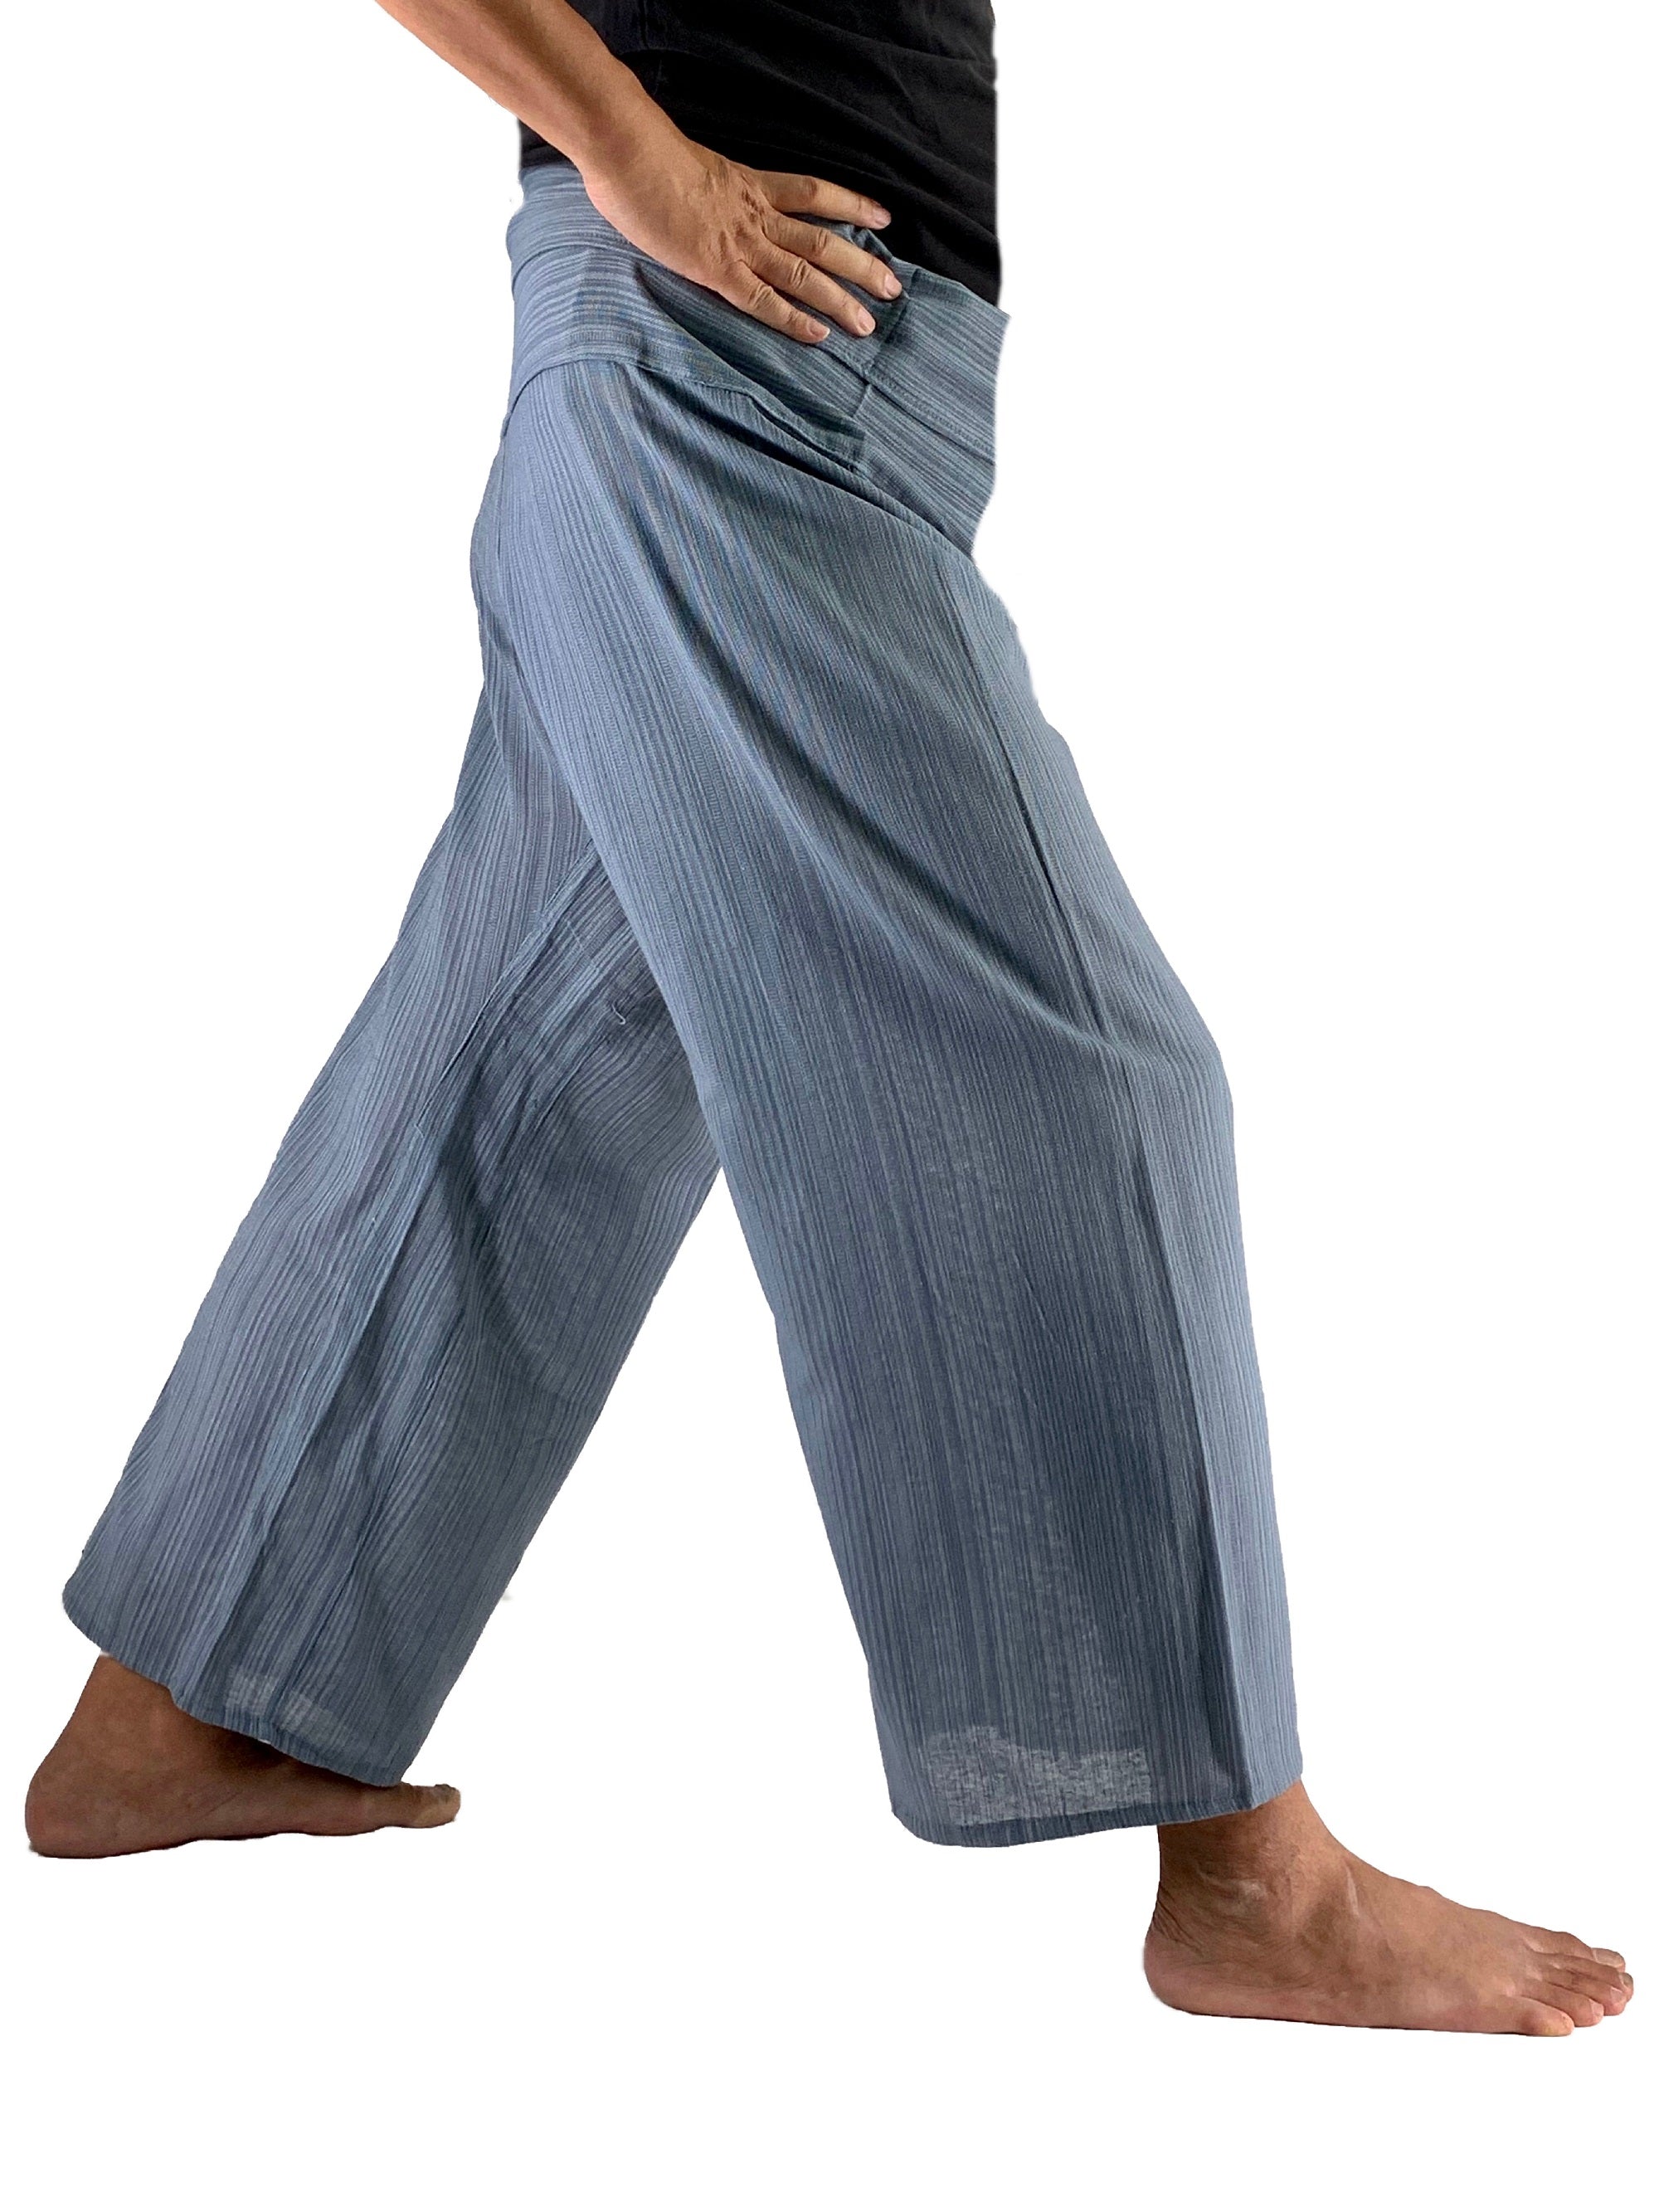 Thai Fisherman Pants in bag ,Cotton Wrap pants - Yoga trouser - Festival  hippie | eBay